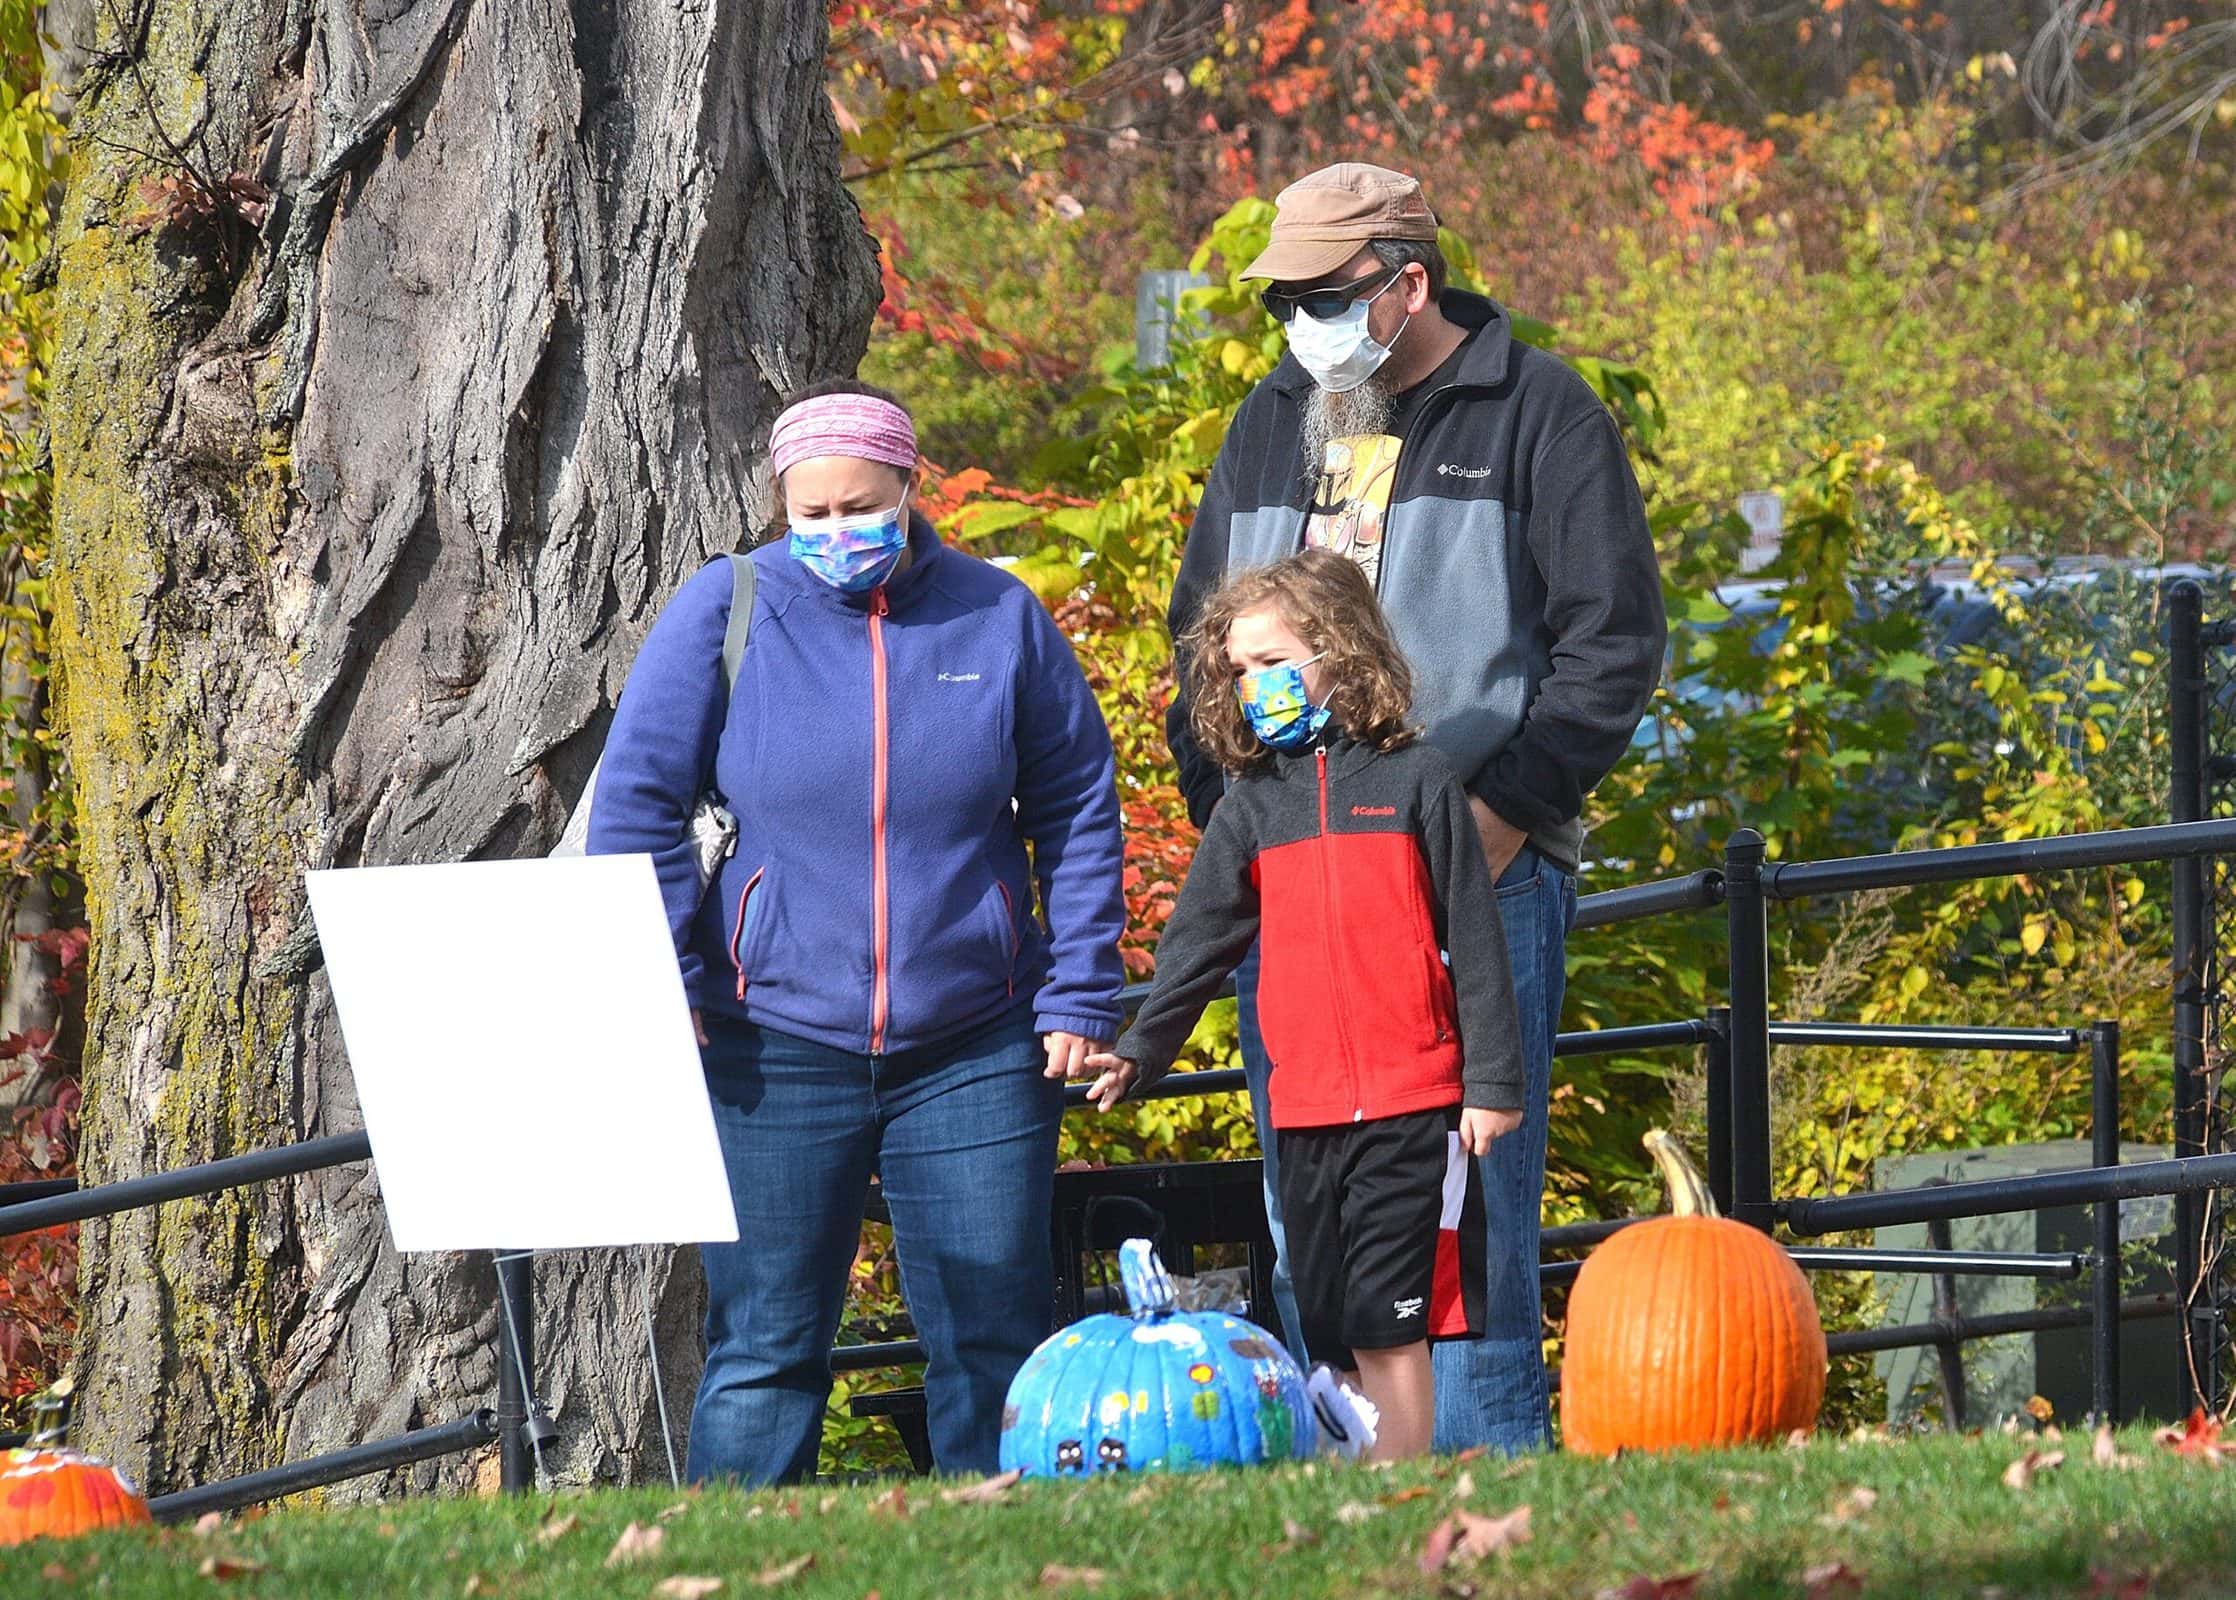 Hudson library hosts first Pumpkin Stroll at Liberty Park